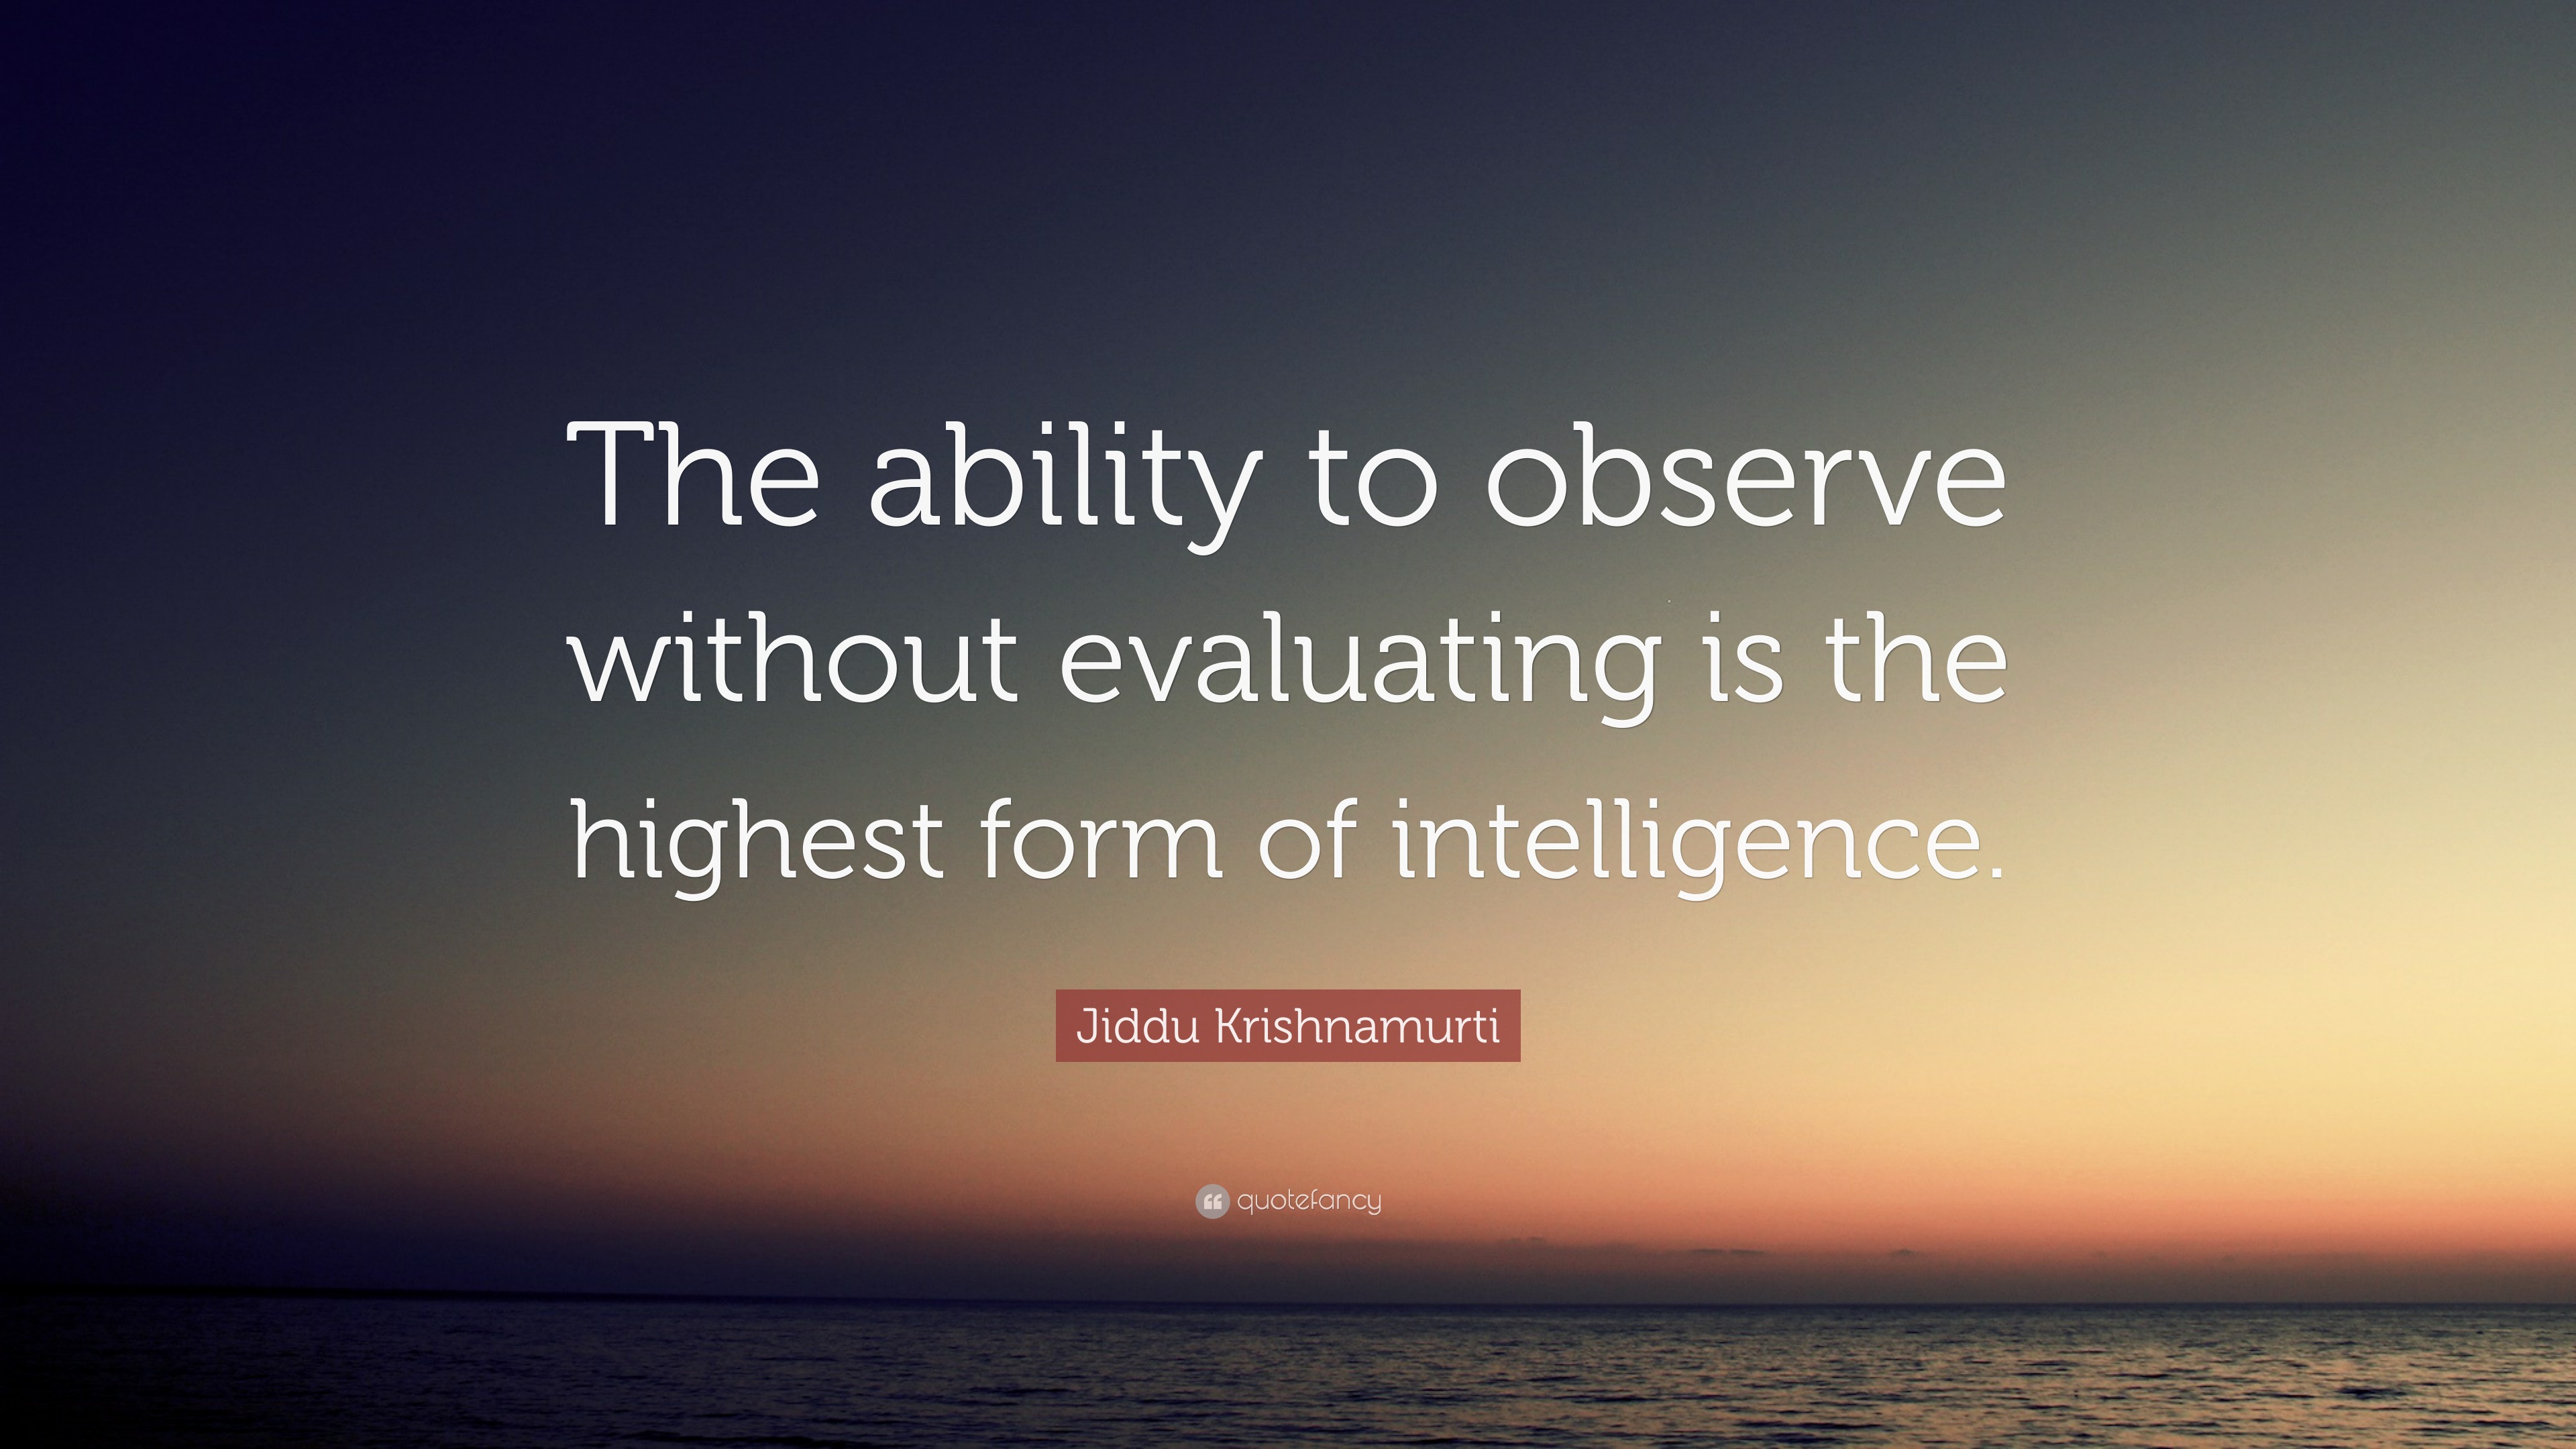 The Awakening of Intelligence by J. Krishnamurti